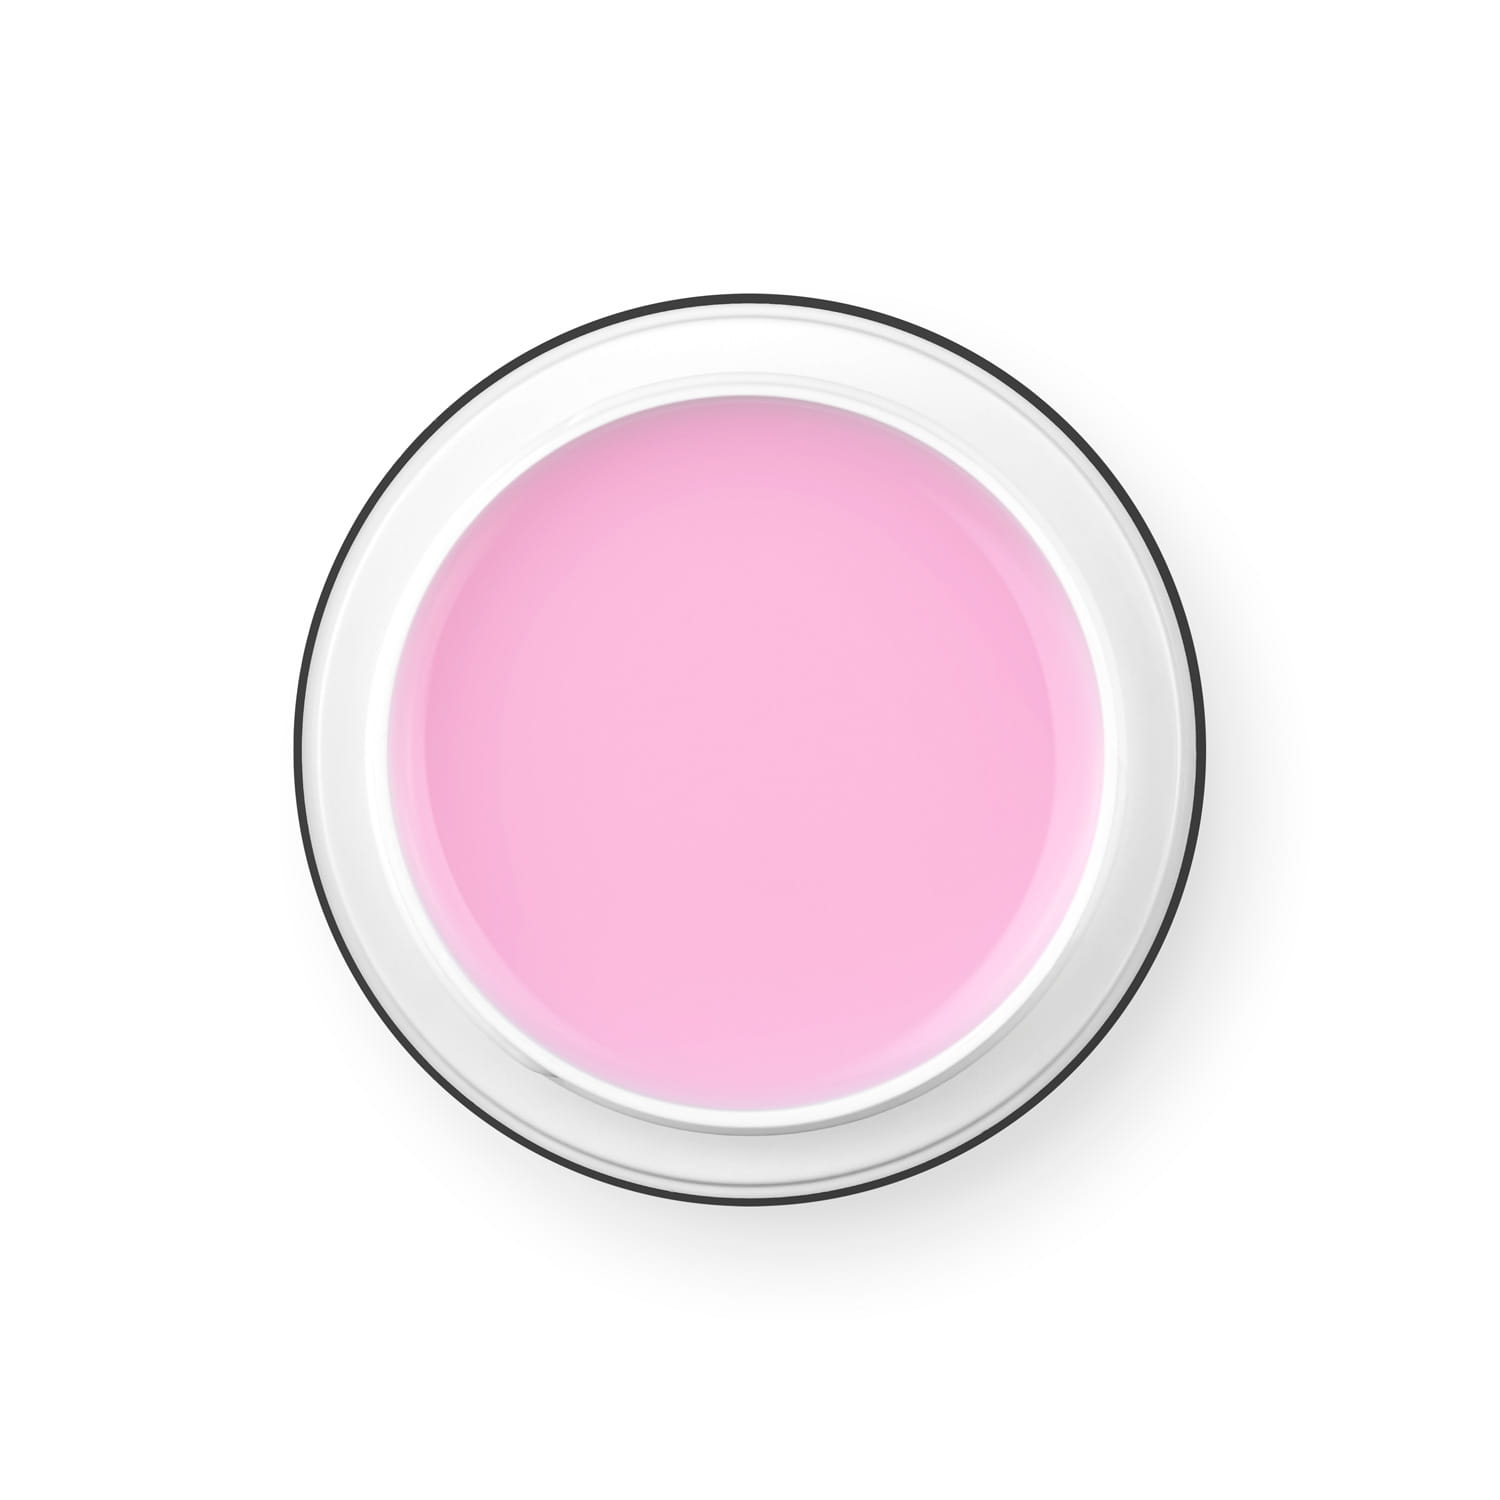 PALU Pro Light Builder építőzselé 45g - Soft Pink